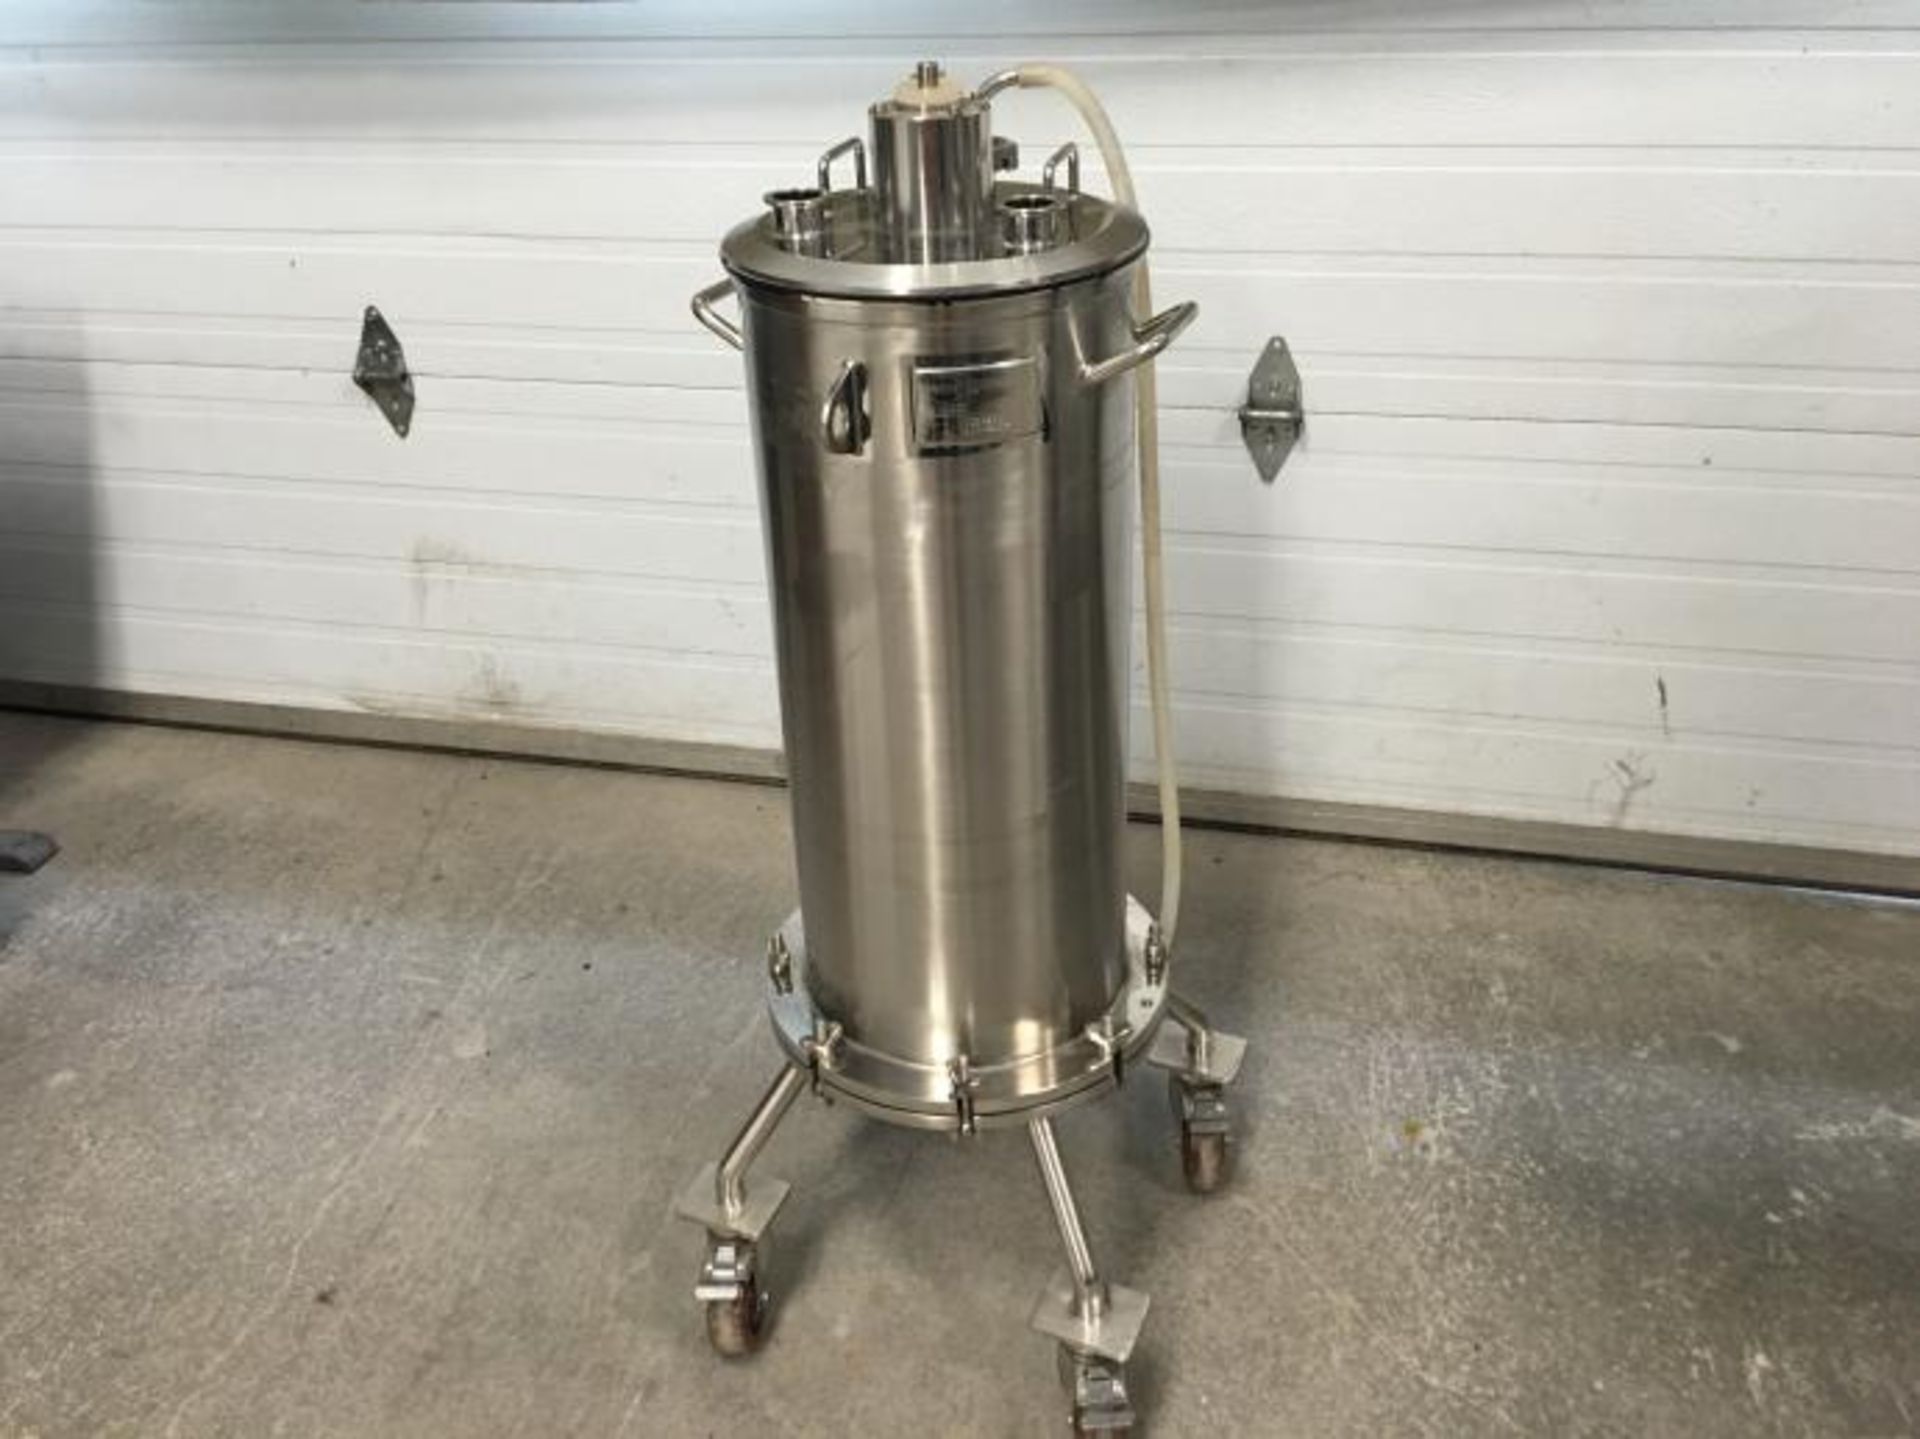 FILTRE BRASSEUR EN INOX largeur: 12 po hauteur: 41.5 po - Brewer filter in stainless steel Width: